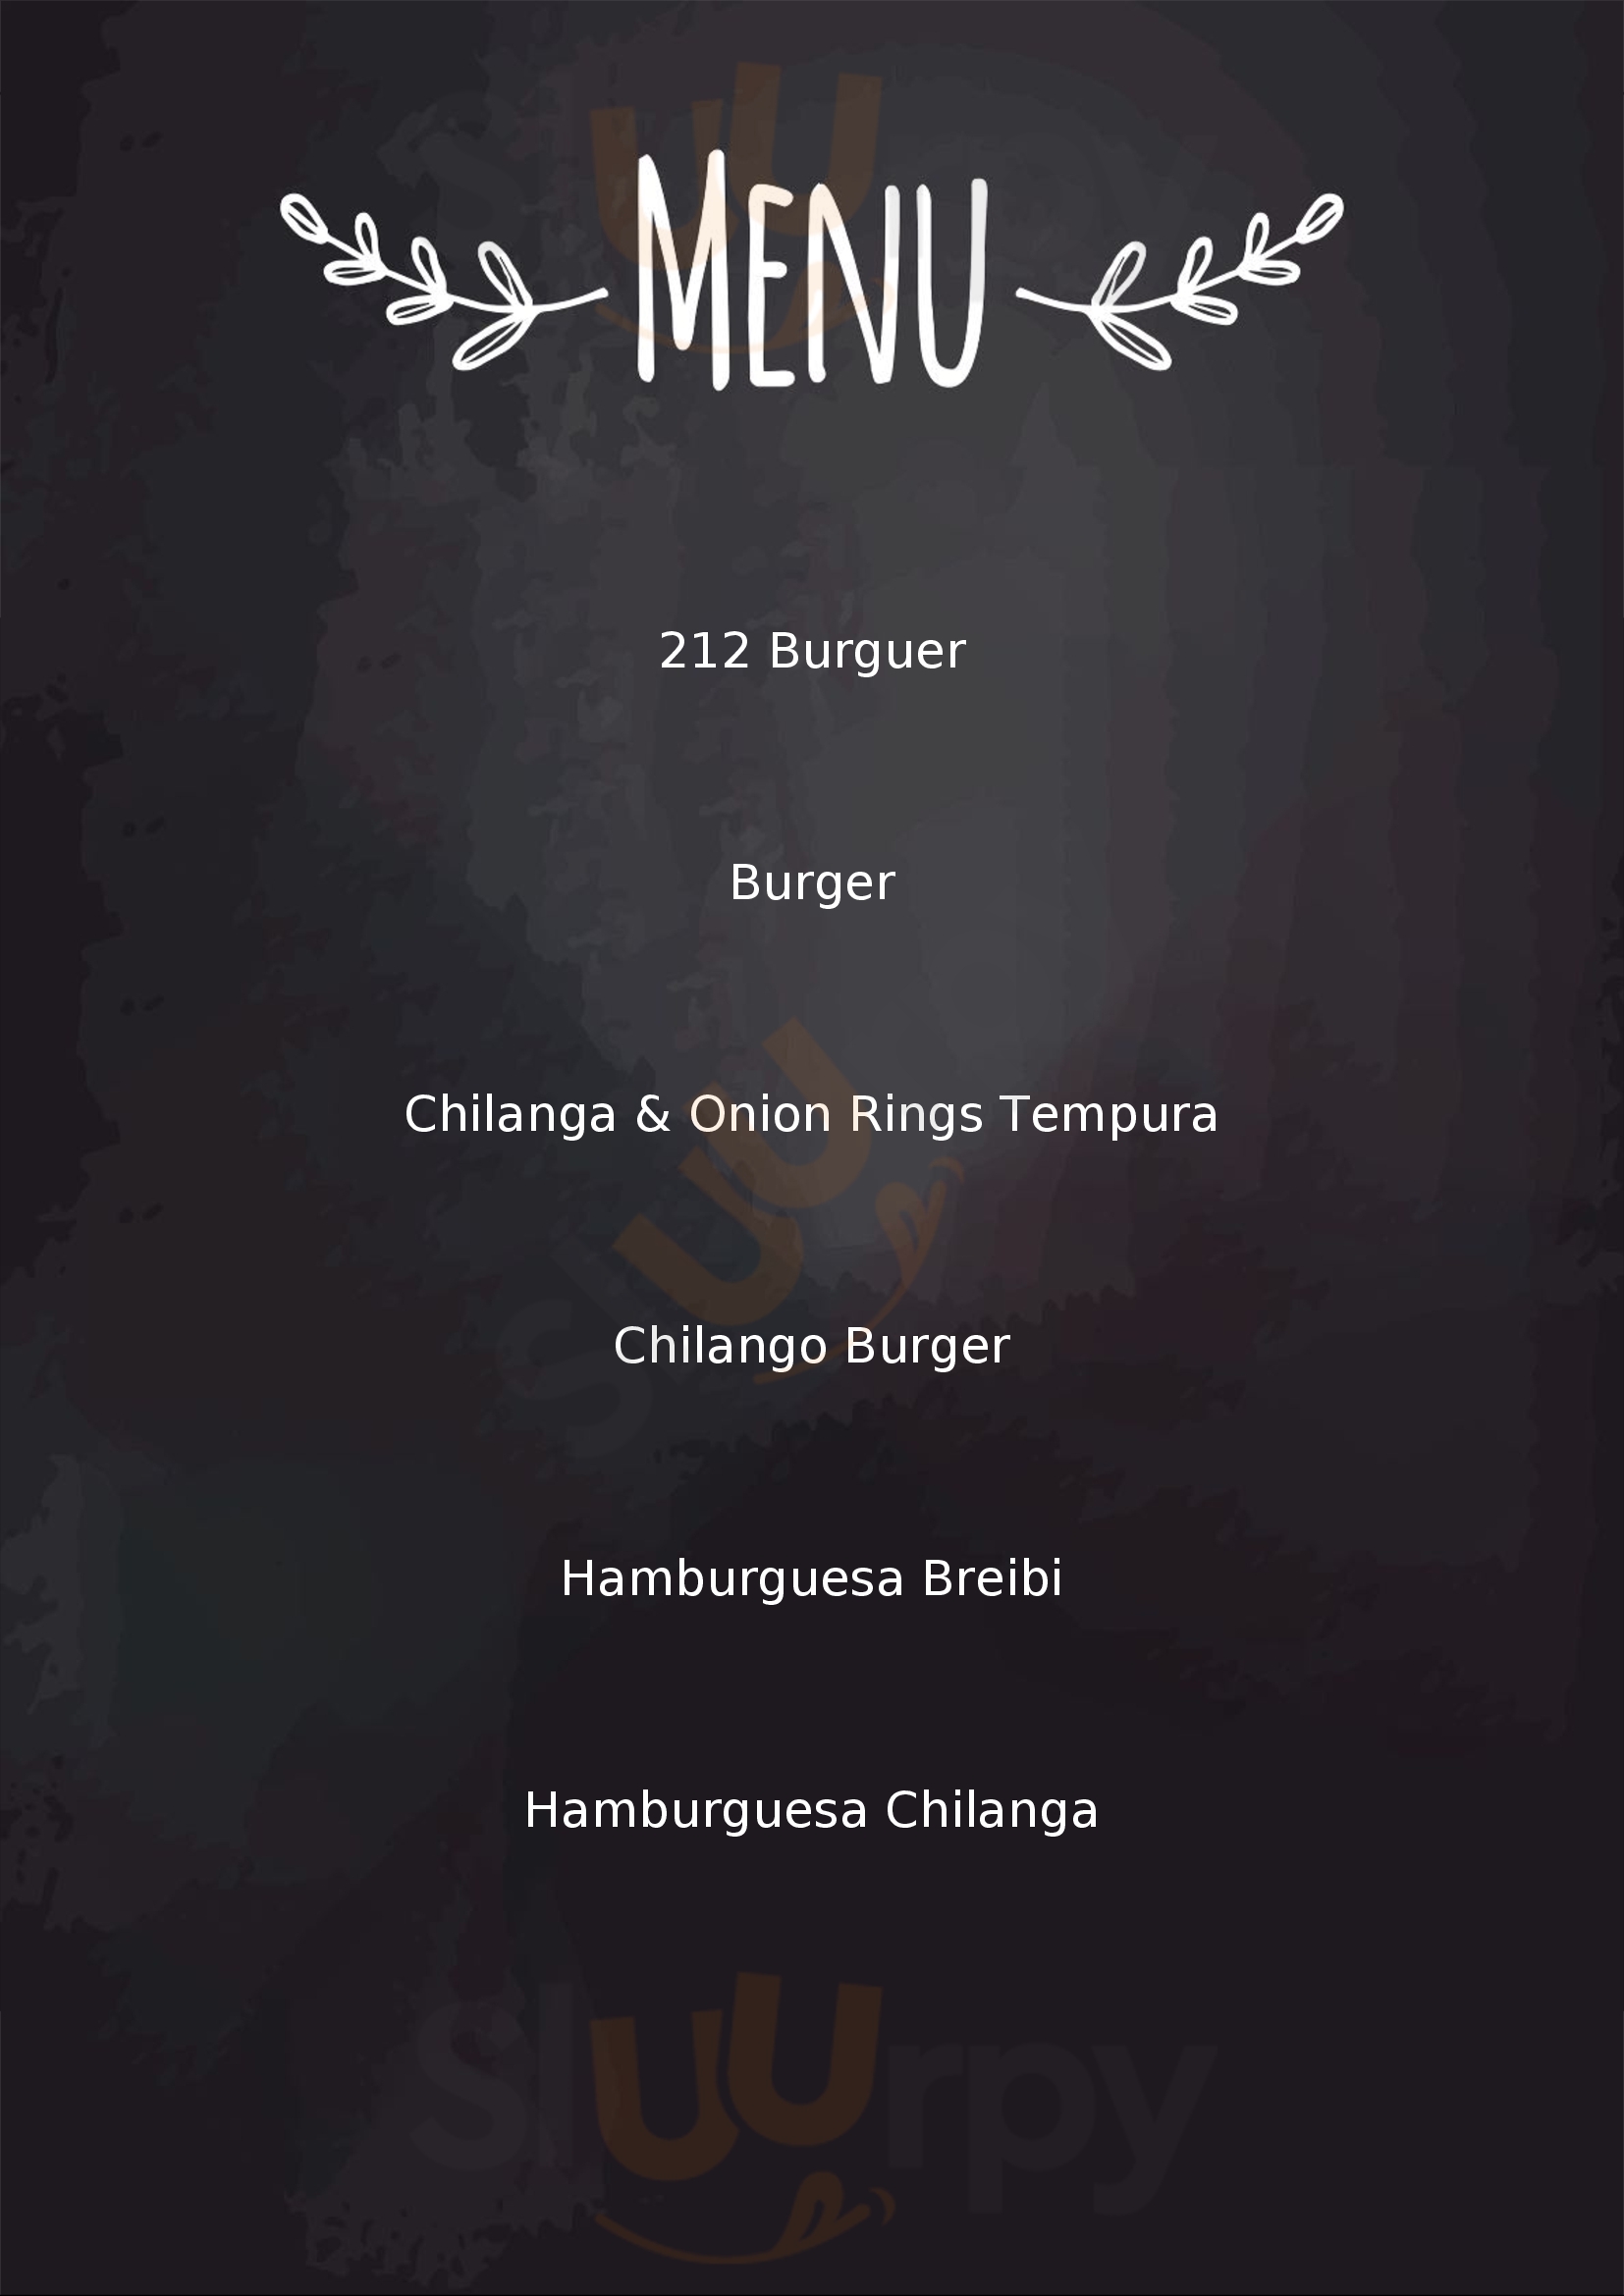 212 Burger Bar Ciudad de México Menu - 1